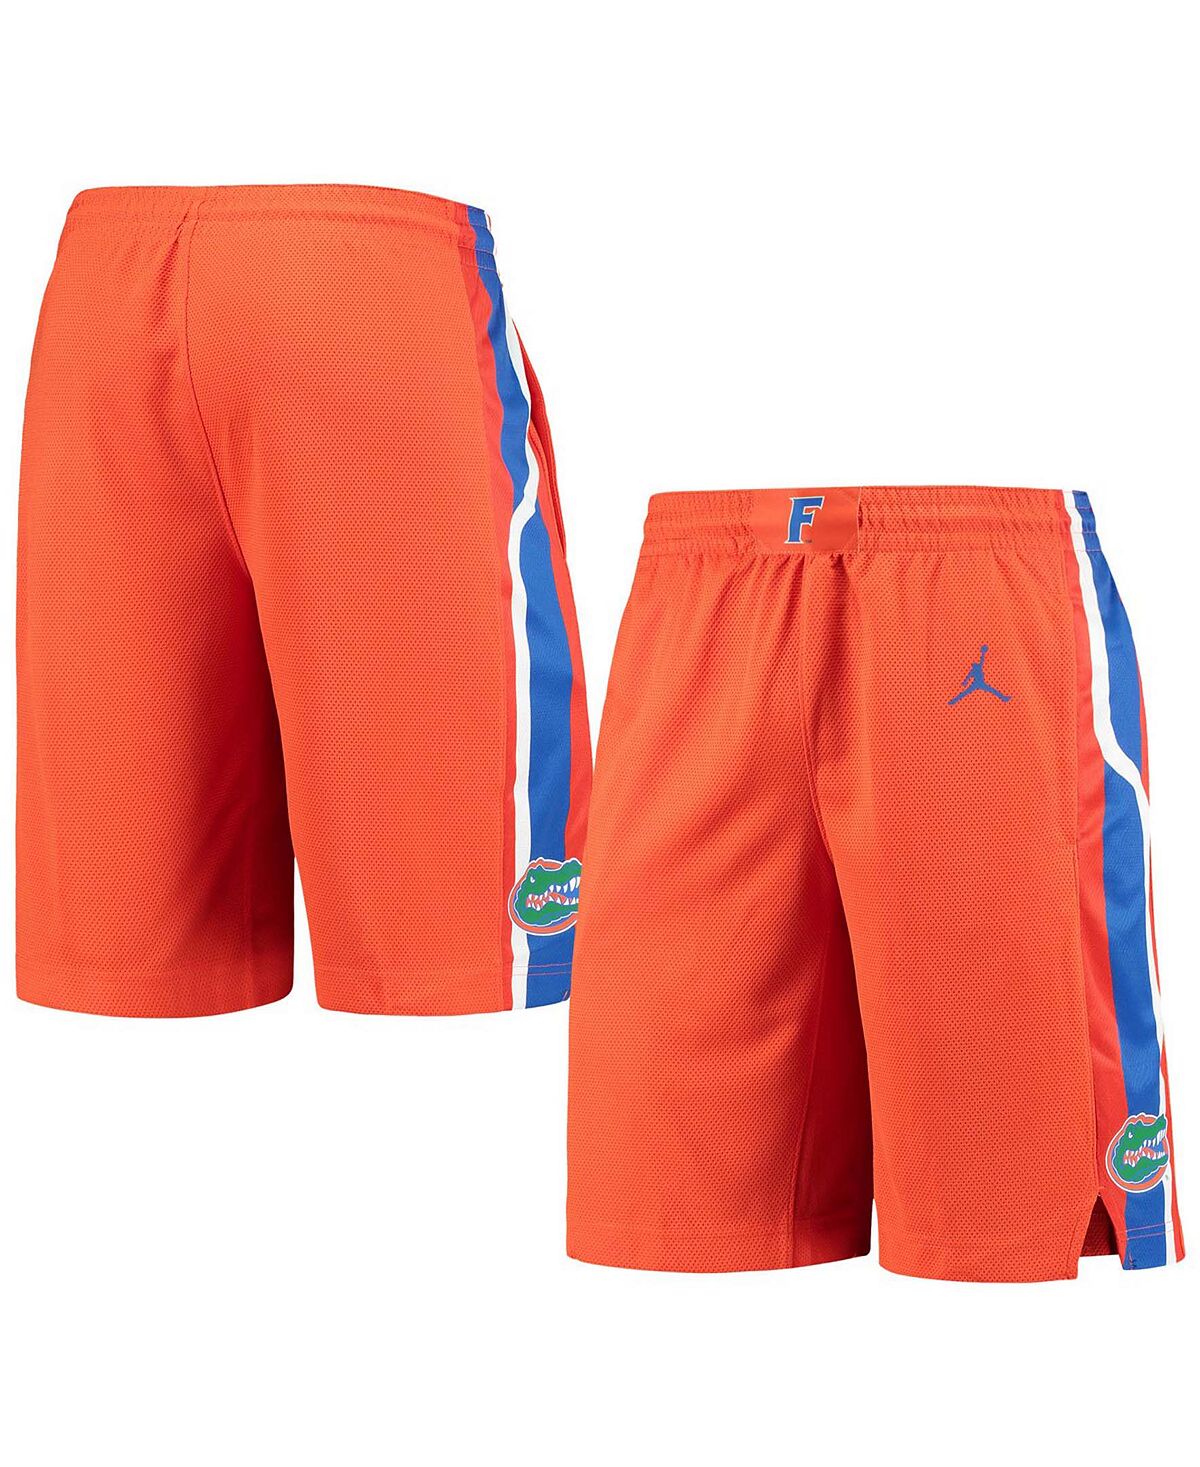 Мужские оранжевые баскетбольные шорты Florida Gators Replica Performance Jordan